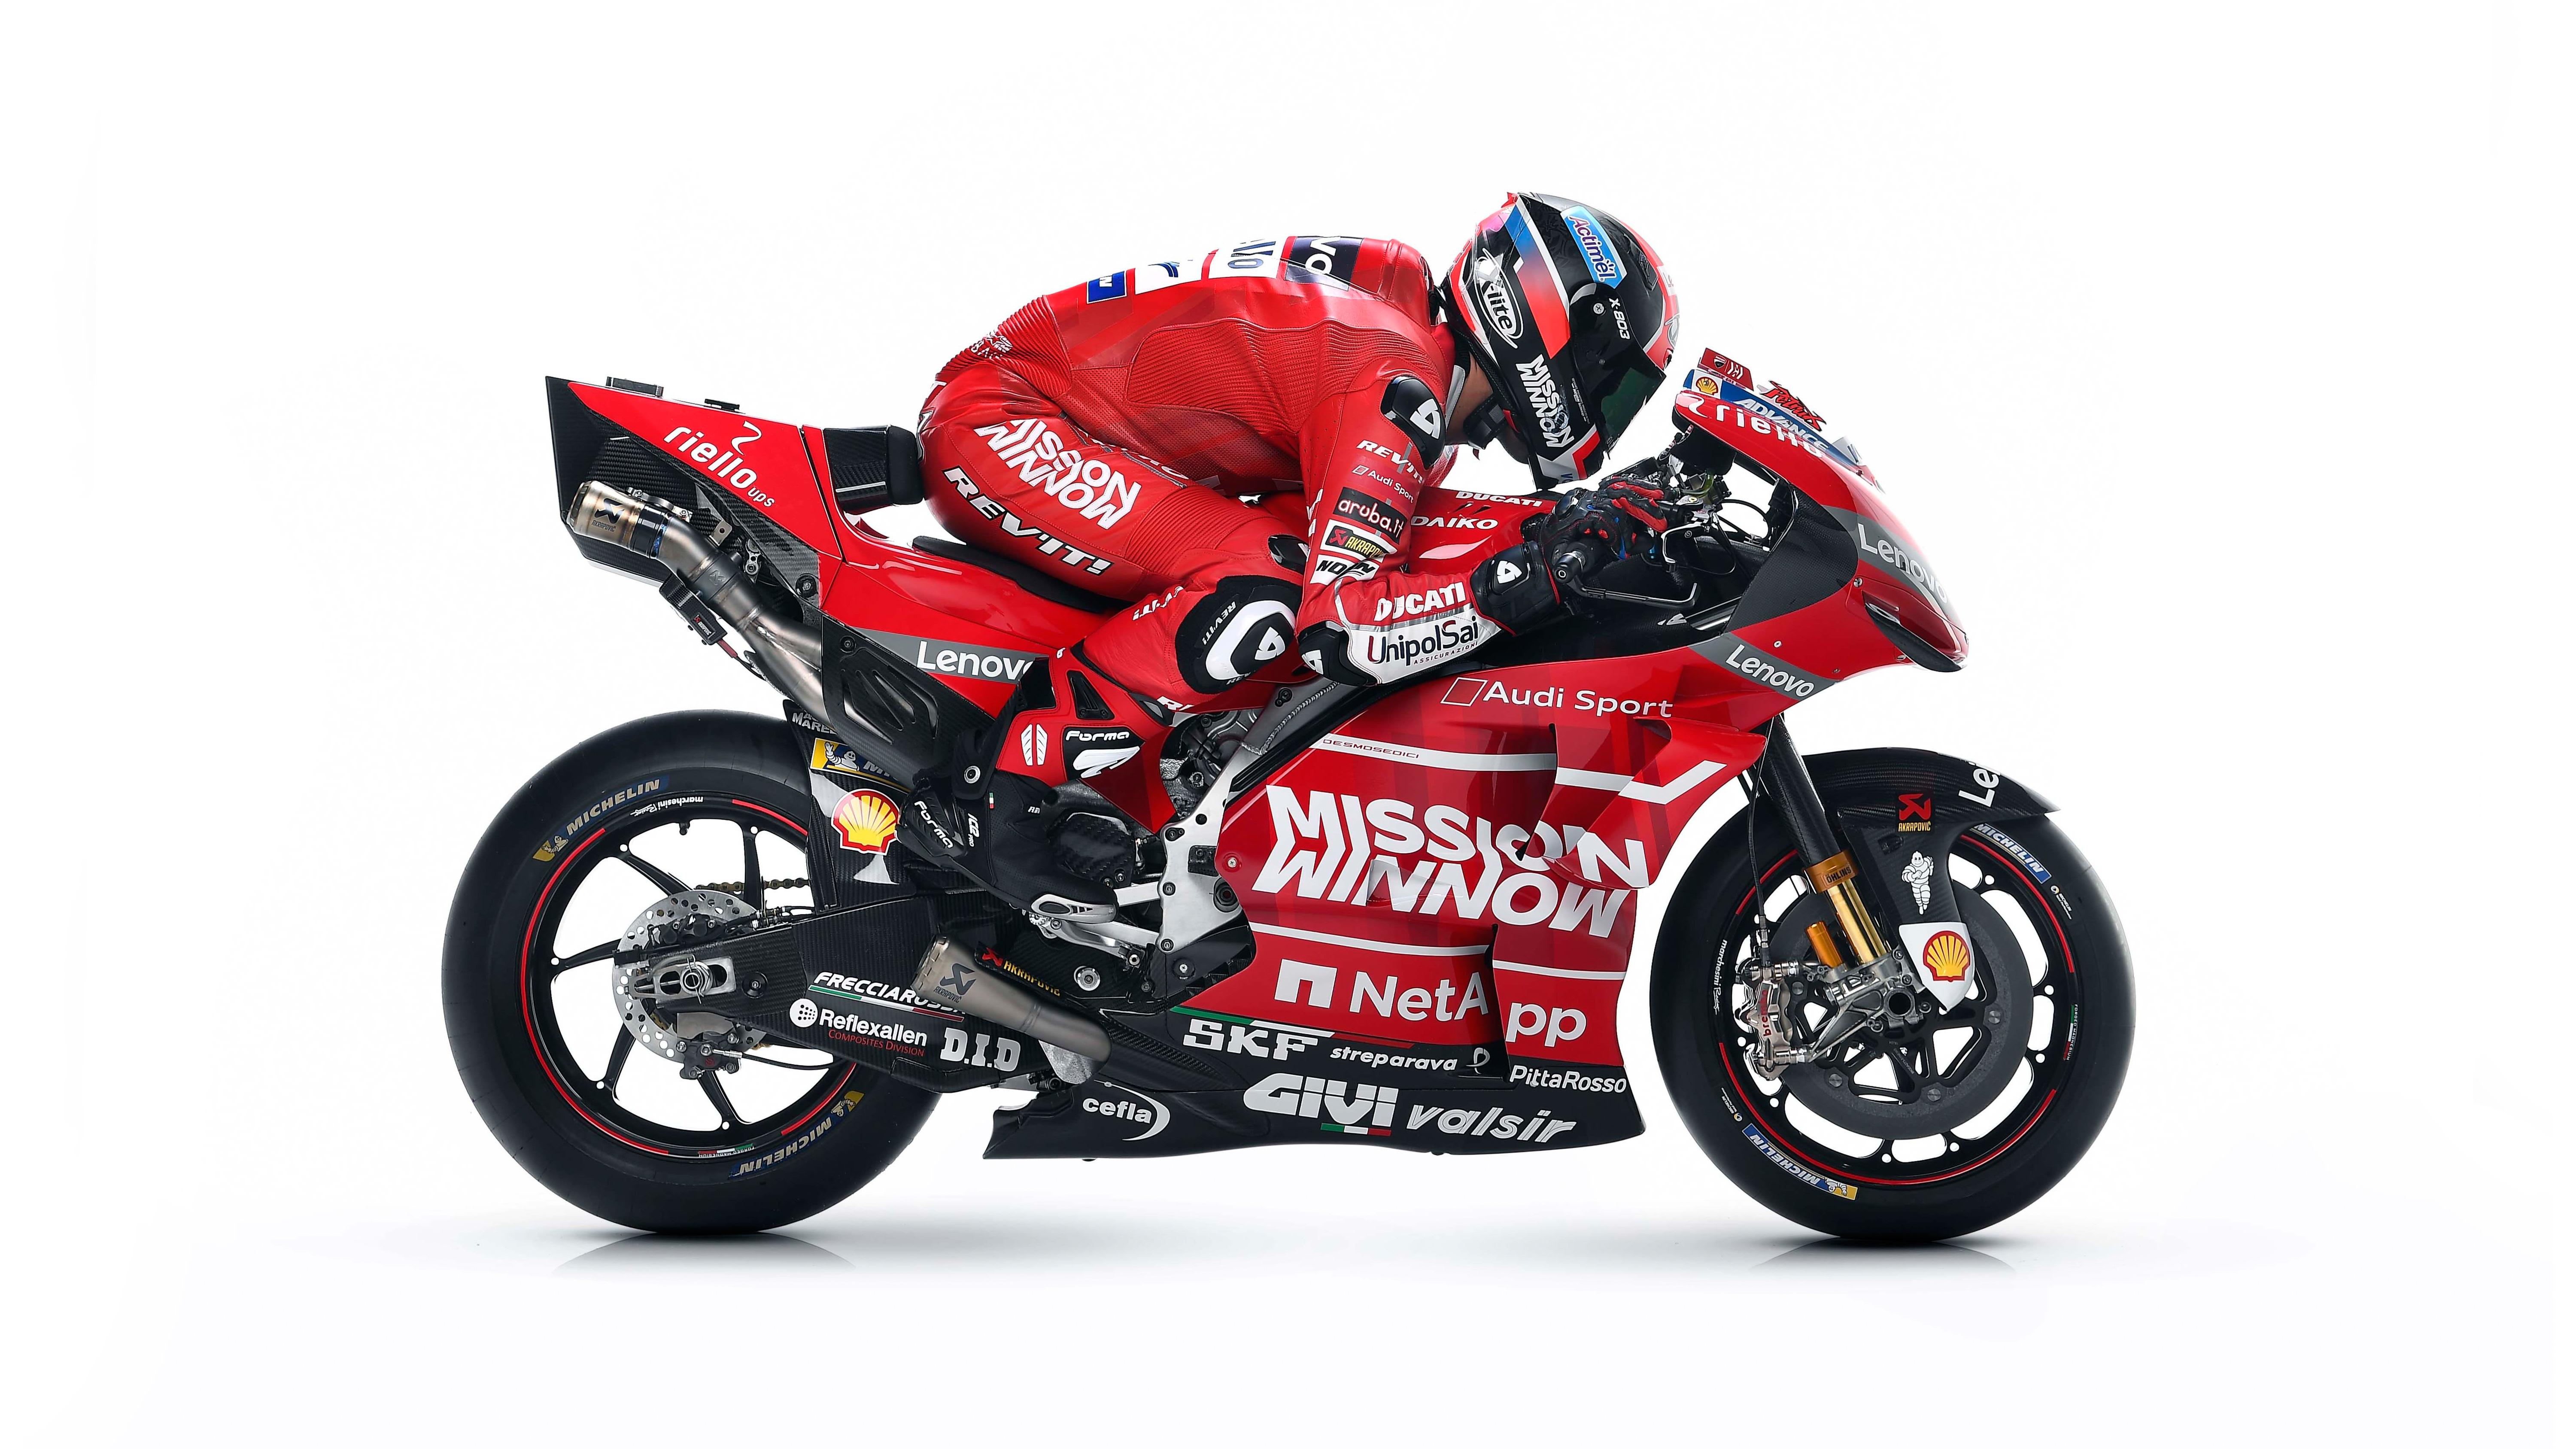 Ducati Desmosedici GP19 MotoGP Race Bike Wallpaper. HD Wallpaper